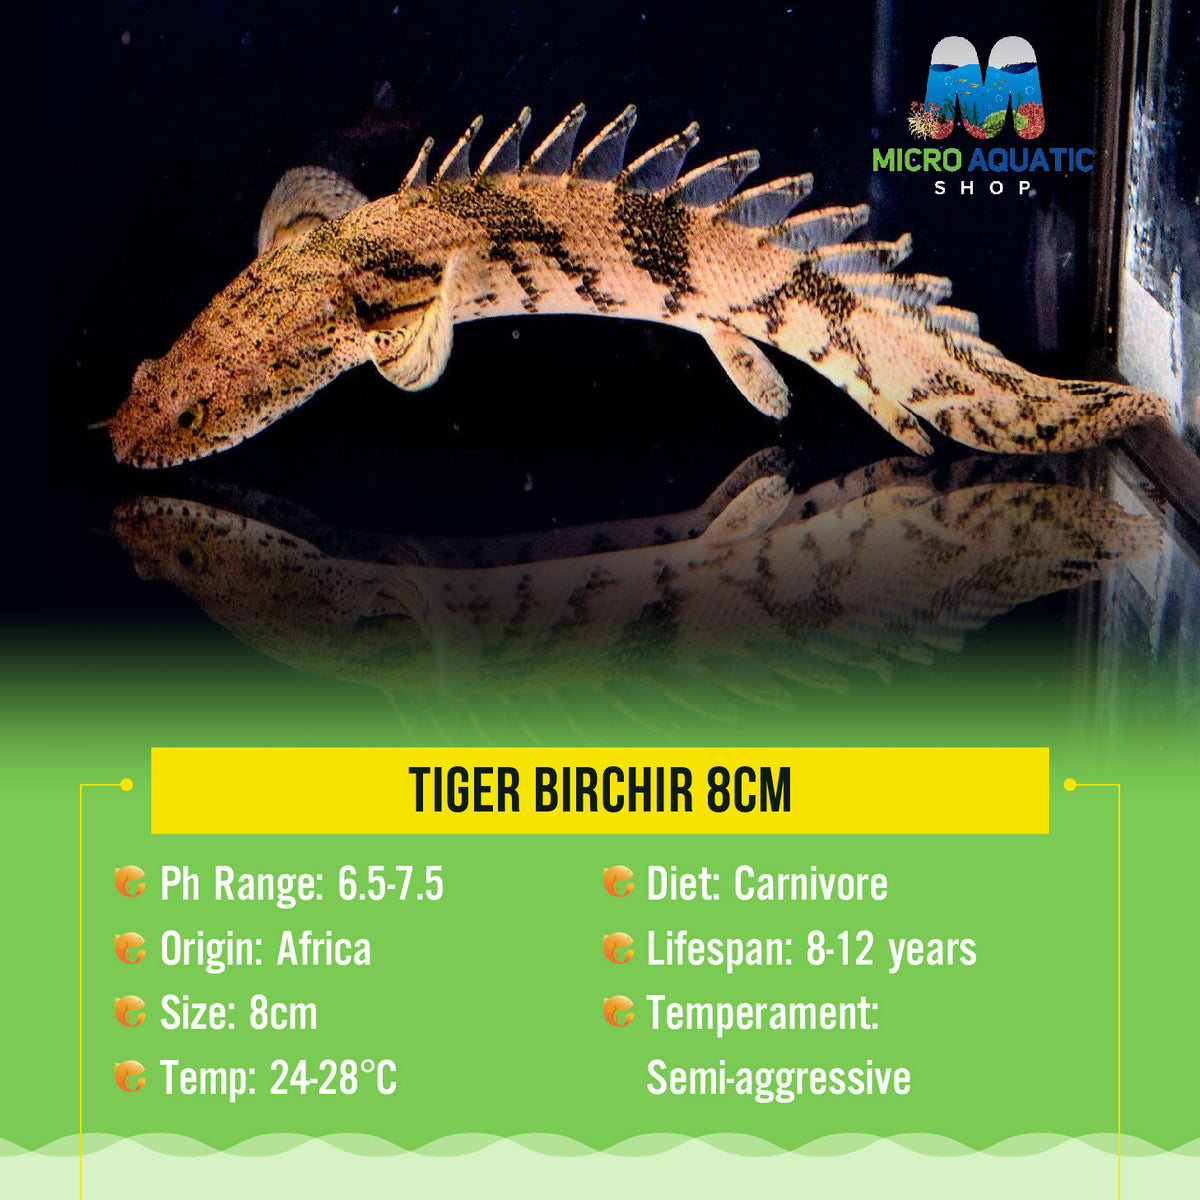 Tiger Birchir 8cm